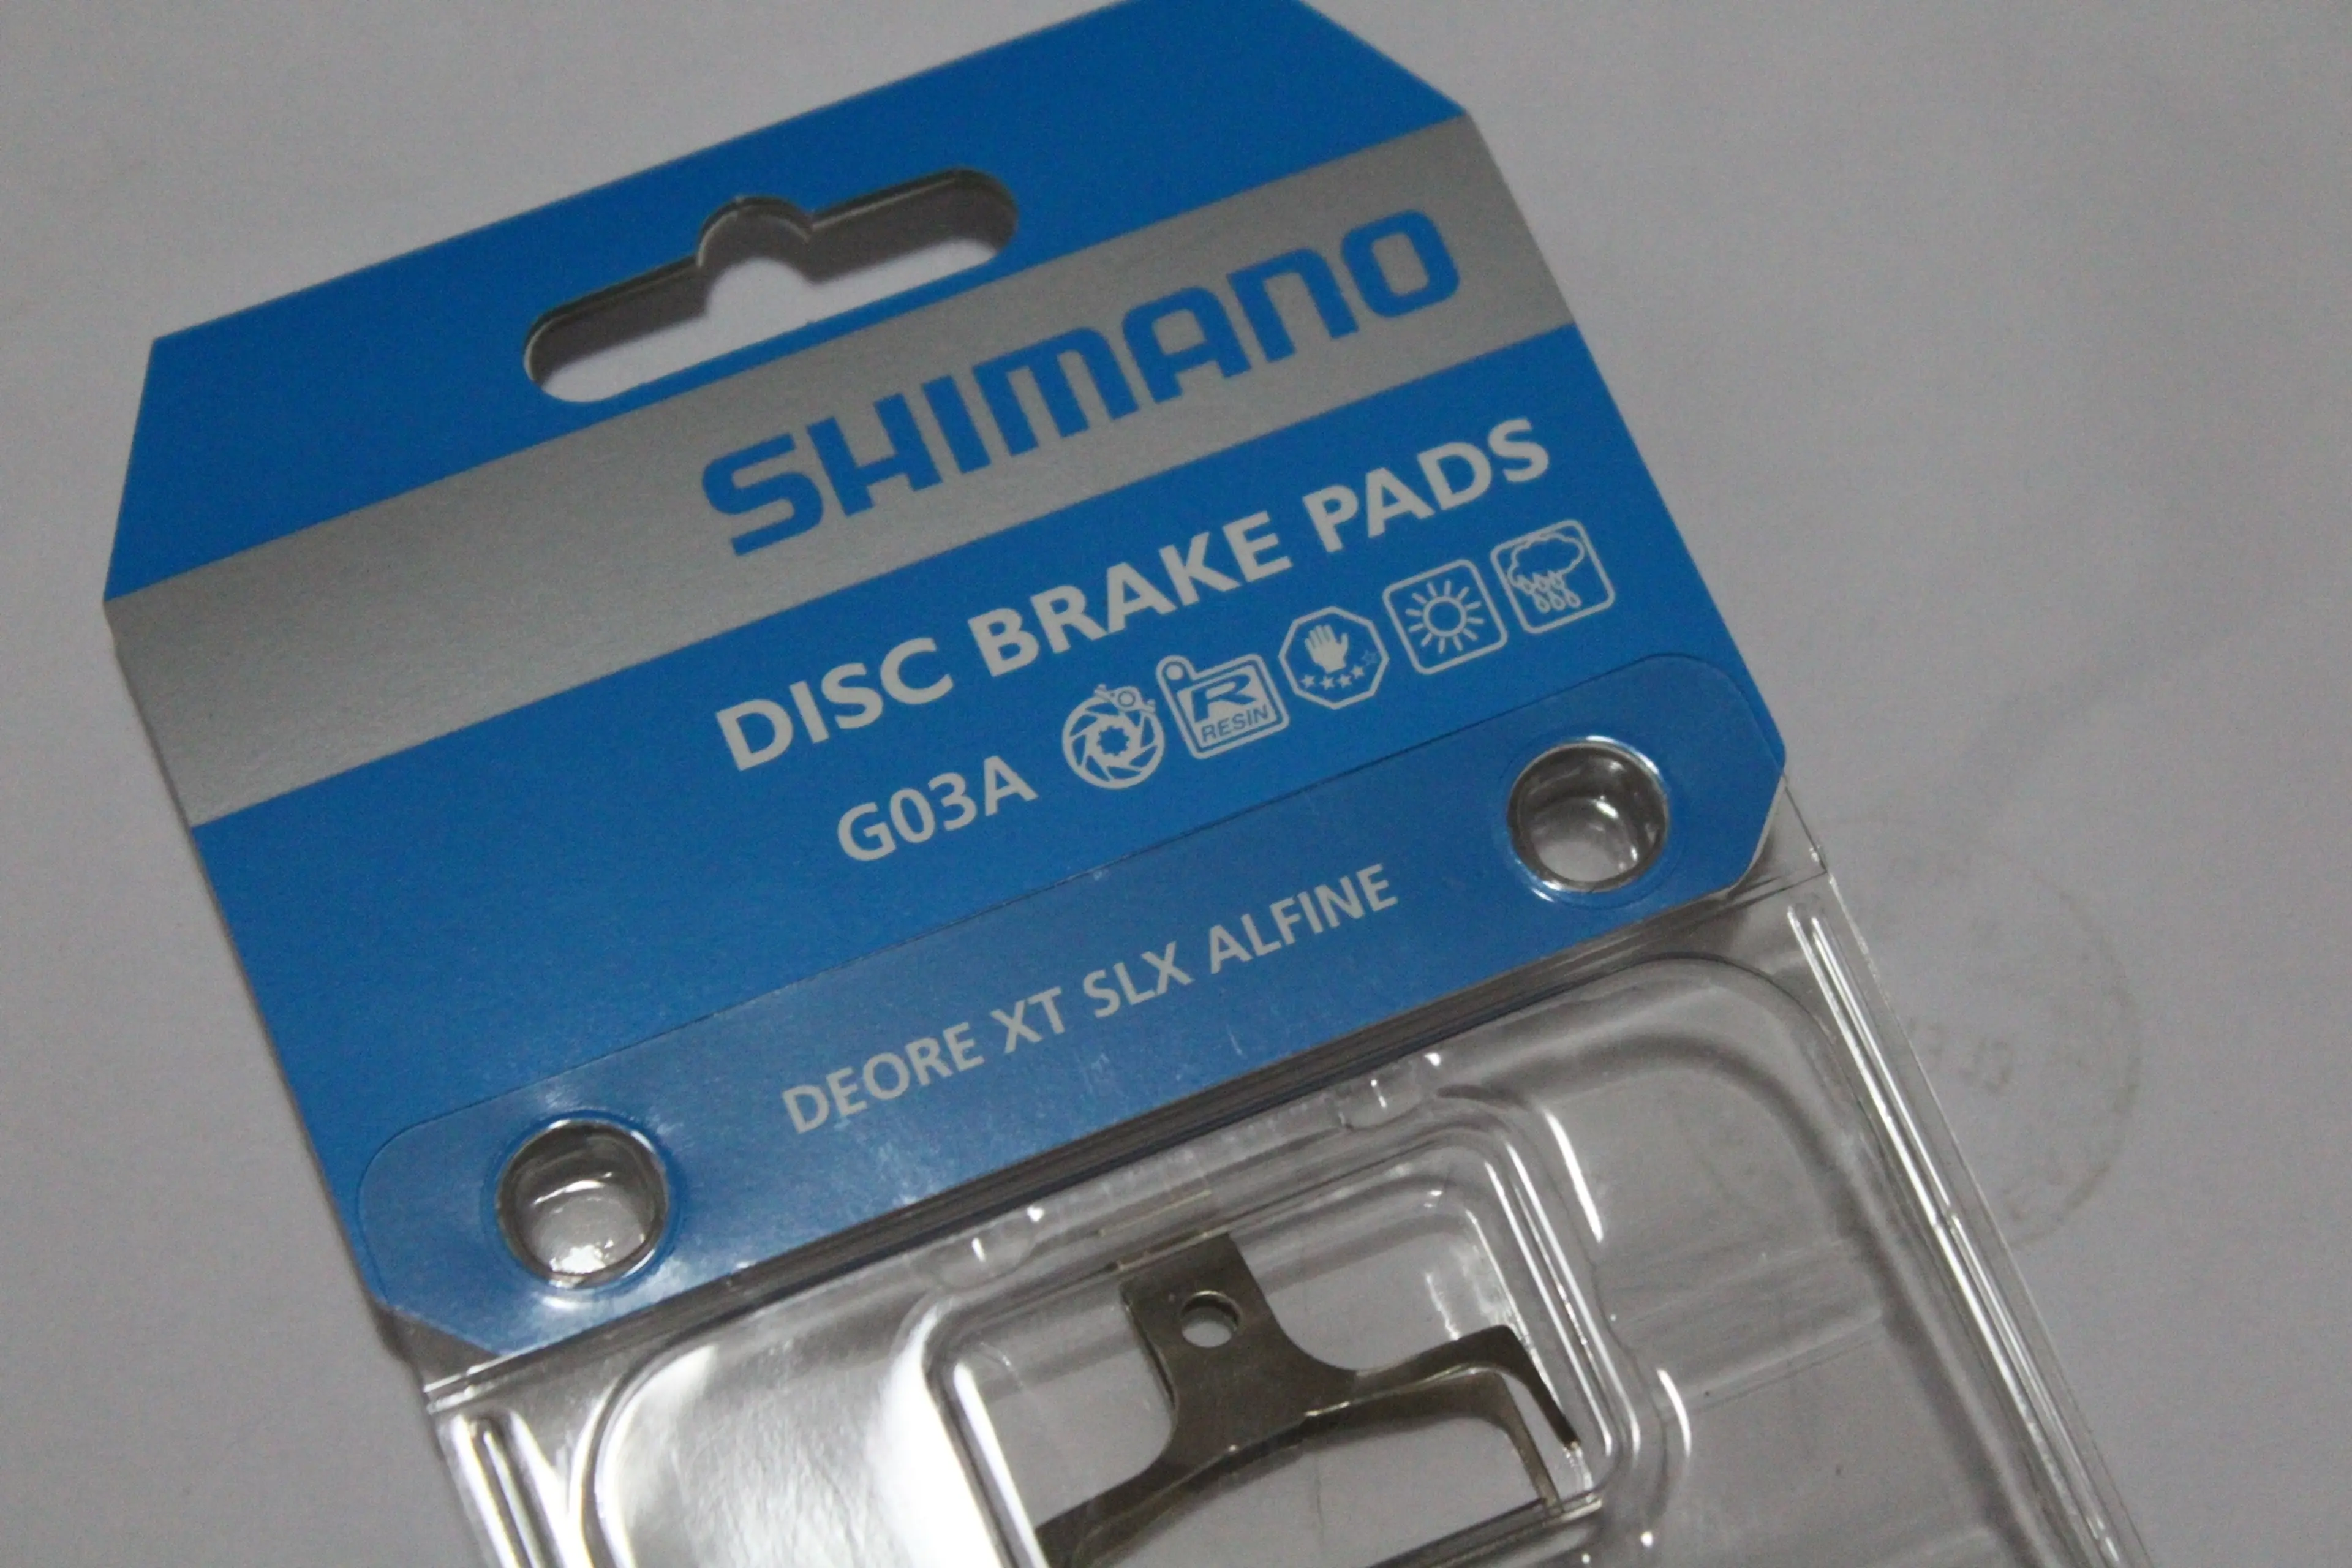 2. Shimano G03A aluminium Resin